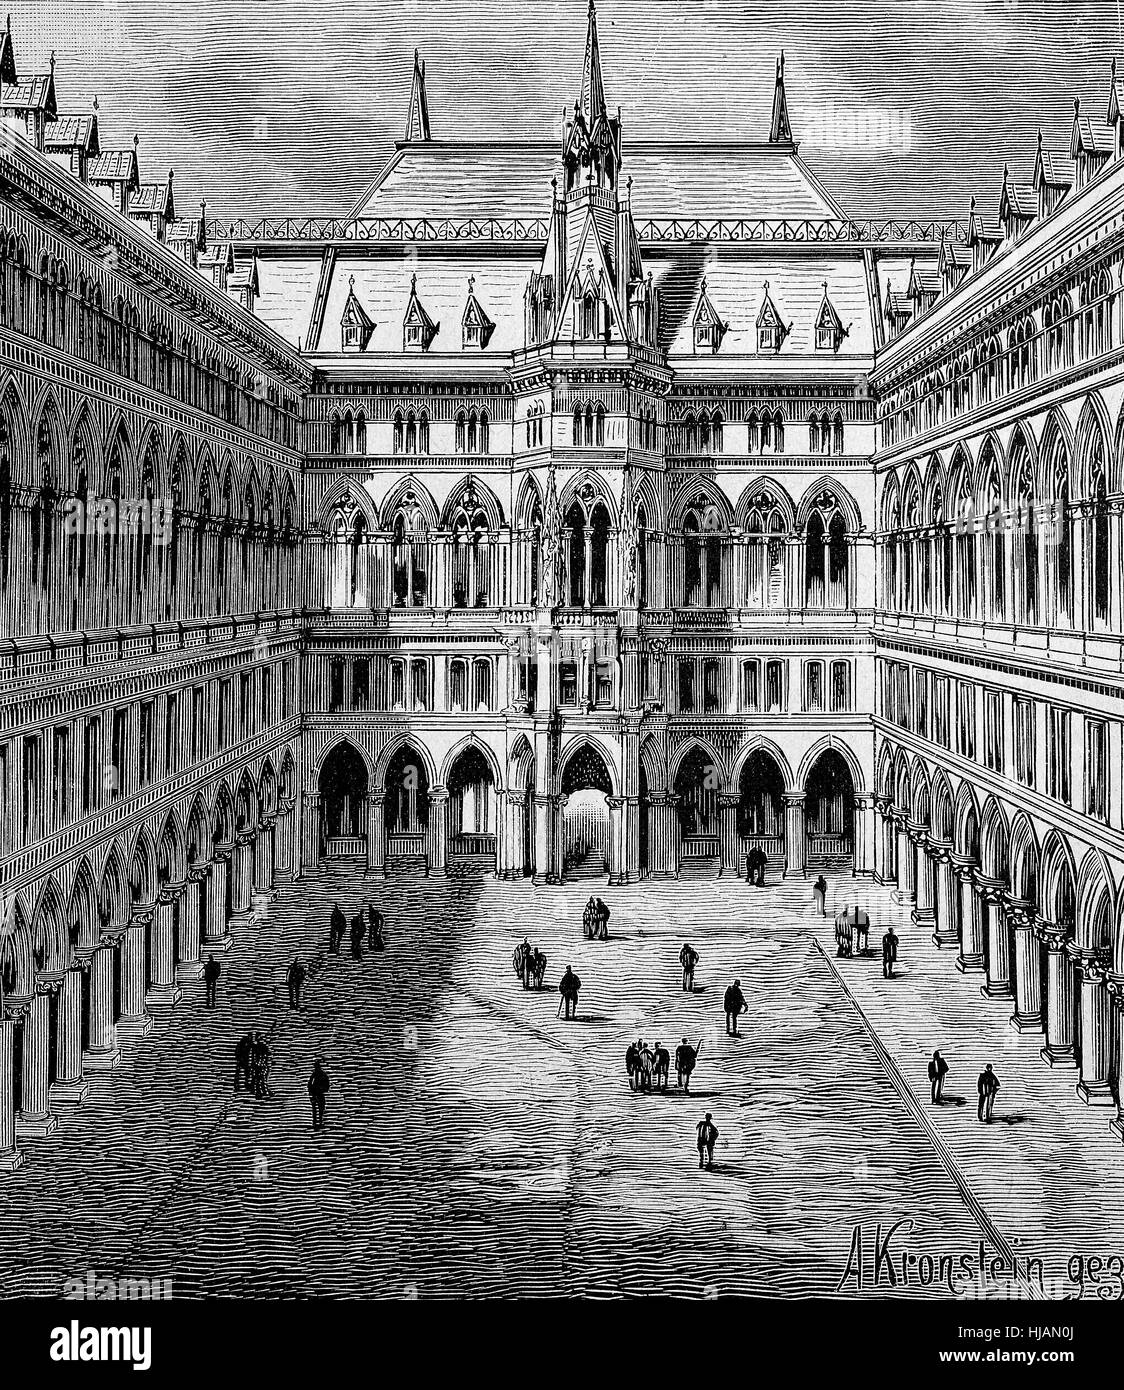 La vieille ville de Vienne, Autriche, la cour intérieure avec des arcades, image historique ou de l'illustration à partir de l'année 1894, l'amélioration numérique Banque D'Images